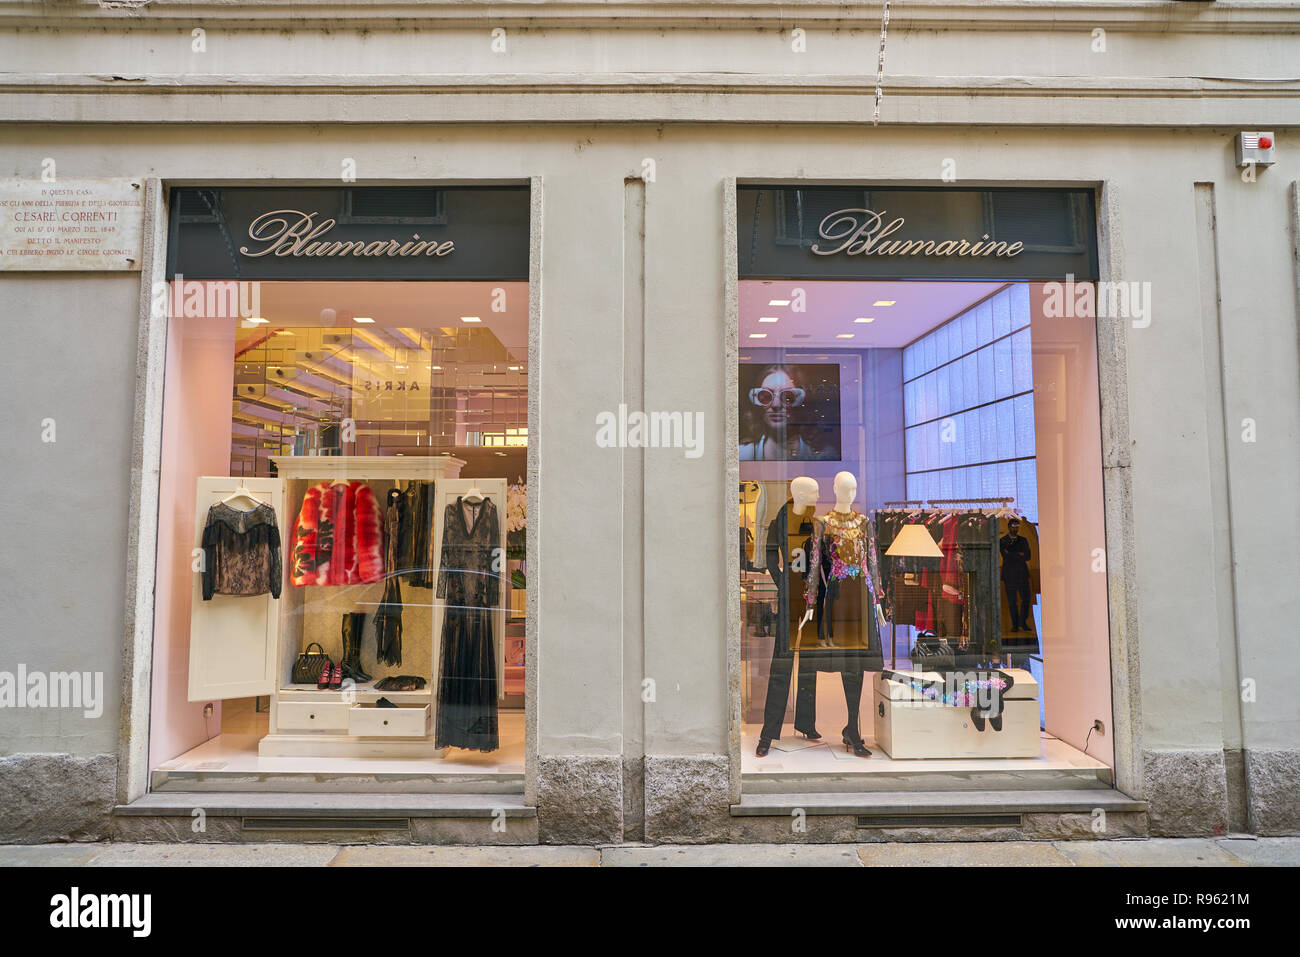 MILAN, ITALY - CIRCA NOVEMBER, 2017: shopfront of a Blumarine shop in Milan  Stock Photo - Alamy